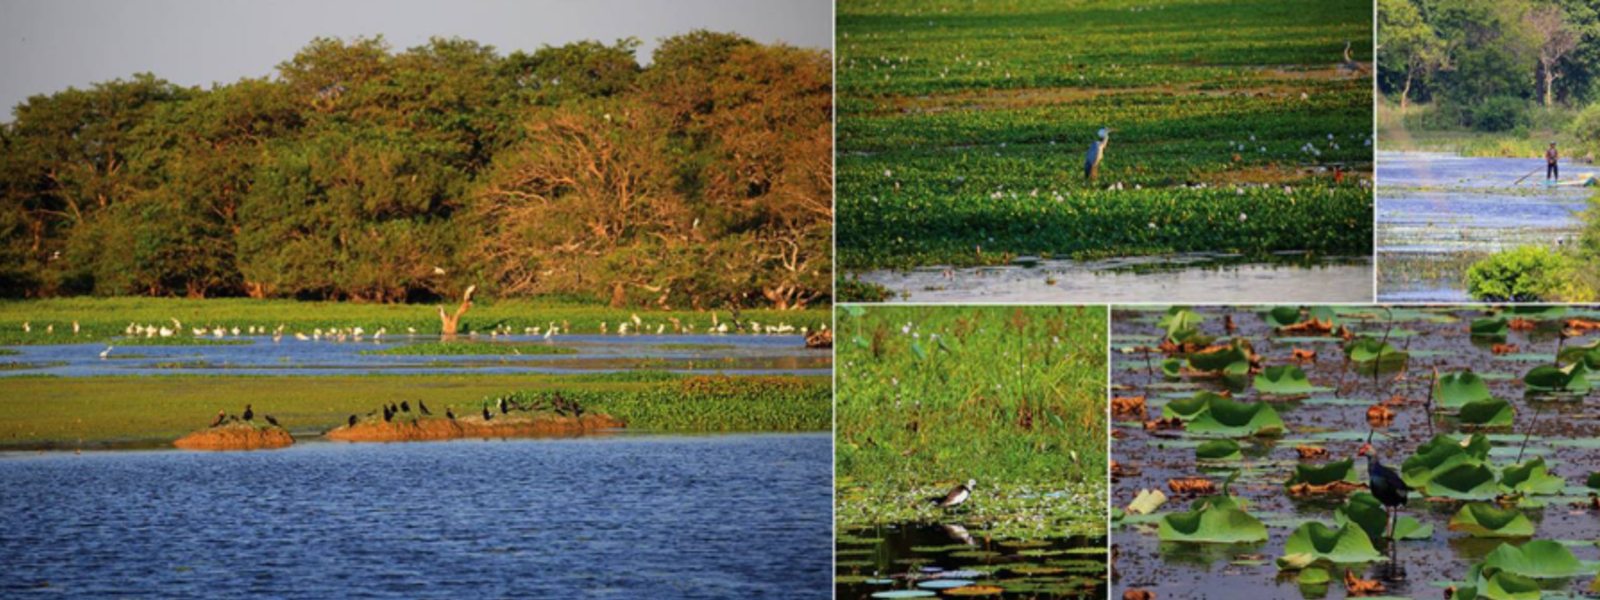 Restoration of destroyed Ramsar wetland, underway